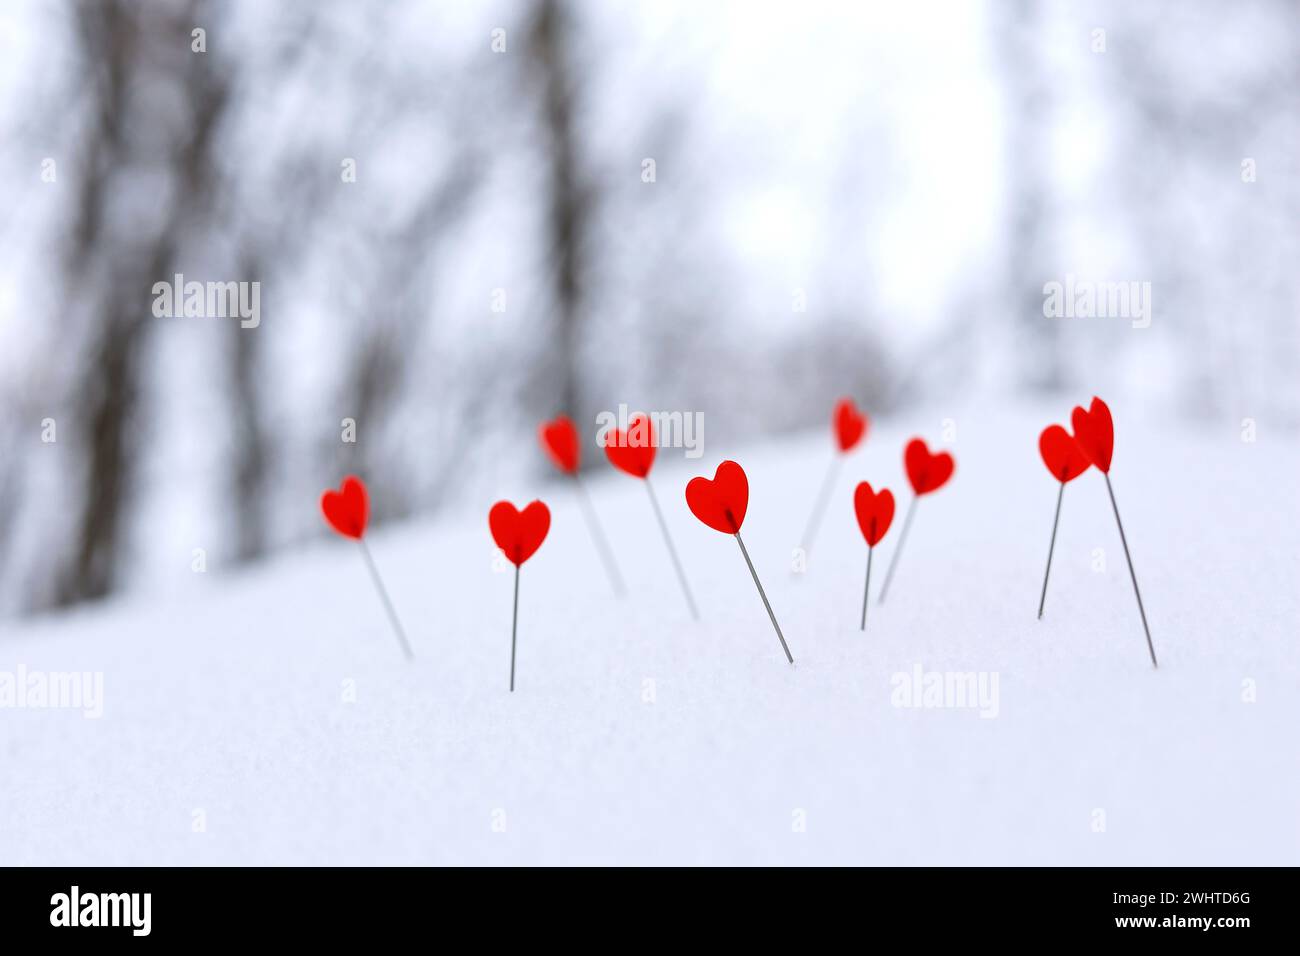 Rote Herzen auf einer Nadel im Schnee auf Winterwald Hintergrund. Grußkarte, romantische Liebe, Valentinstag Stockfoto